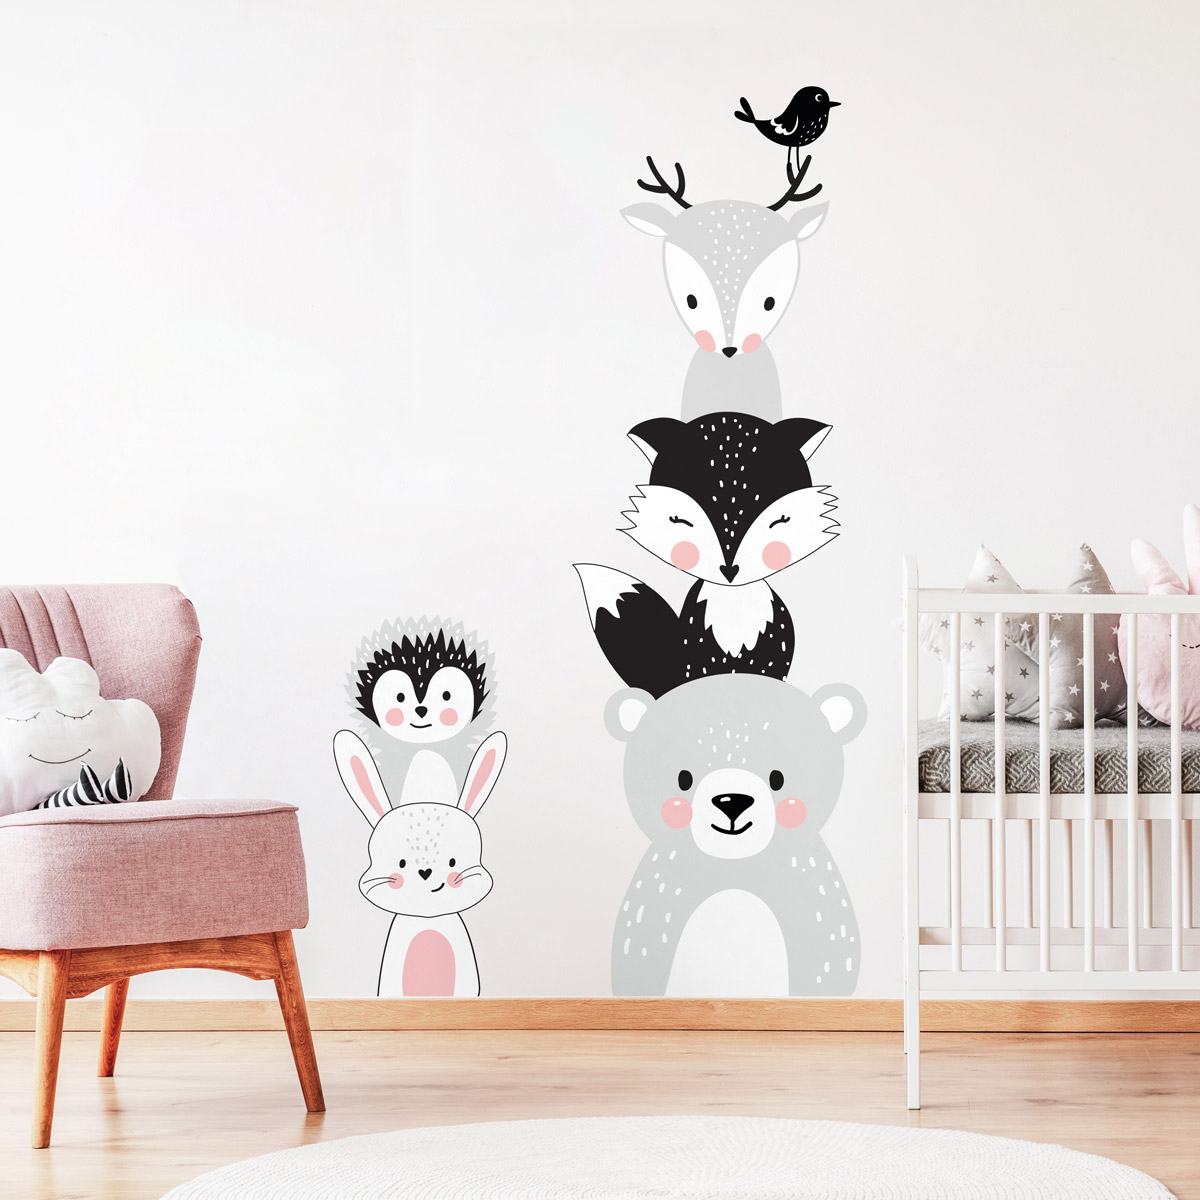 Stickers Muraux Animaux - Pour chambre d'enfant